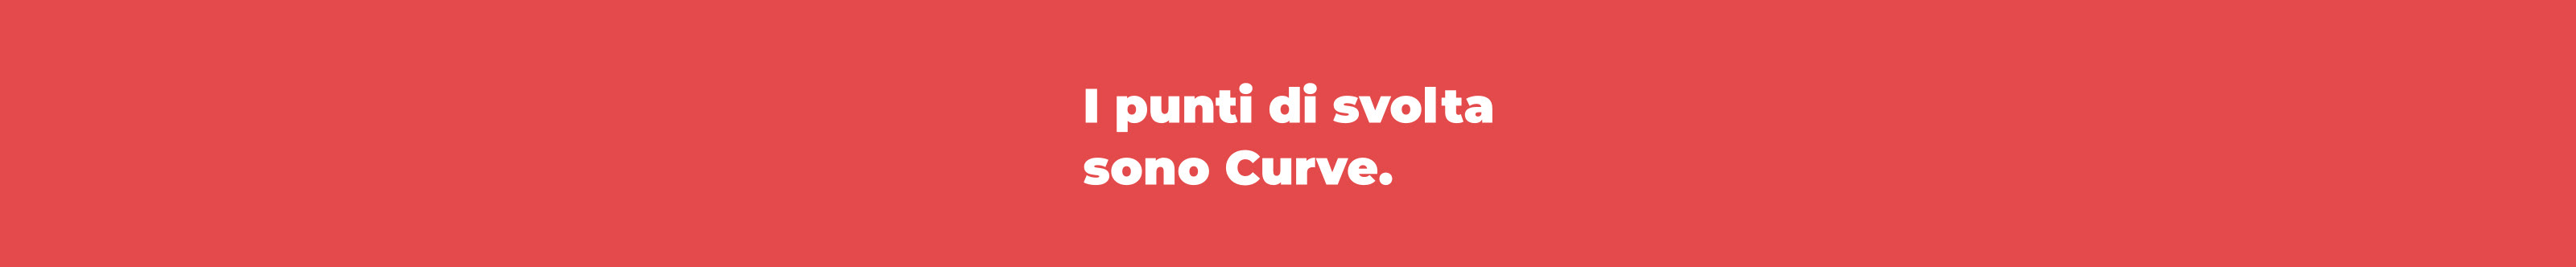 Curve Creative Studio's profile banner